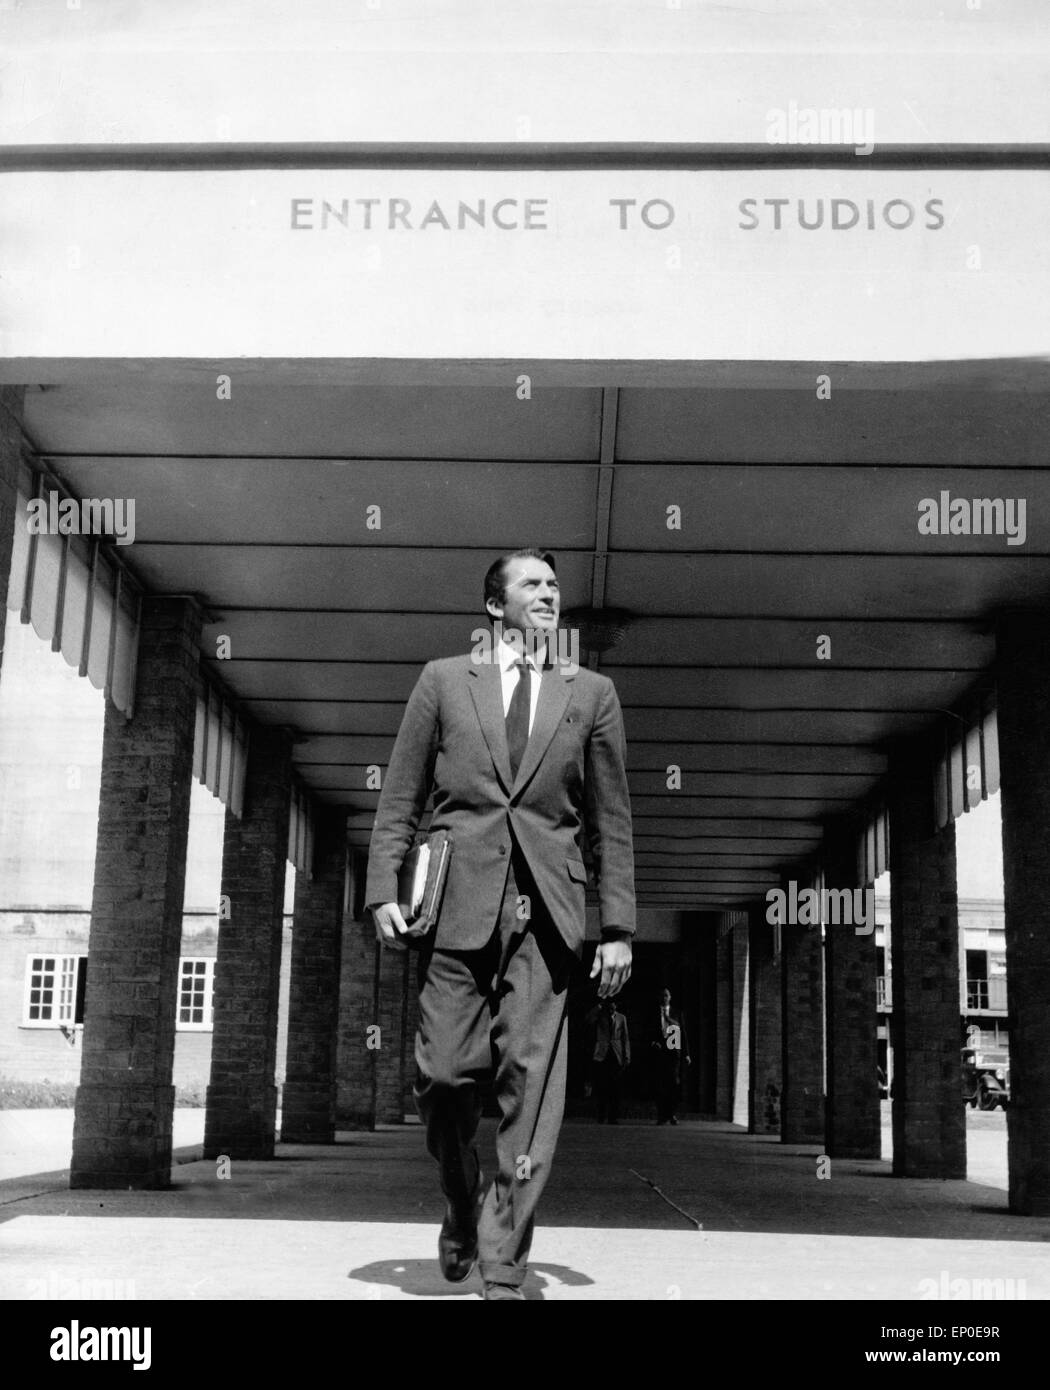 Der amerikanische Schauspieler Gregory Peck beim Verlassen der Filmstudios, Hollywood, 1950er Jahre. American actor Gregory Peck Stock Photo